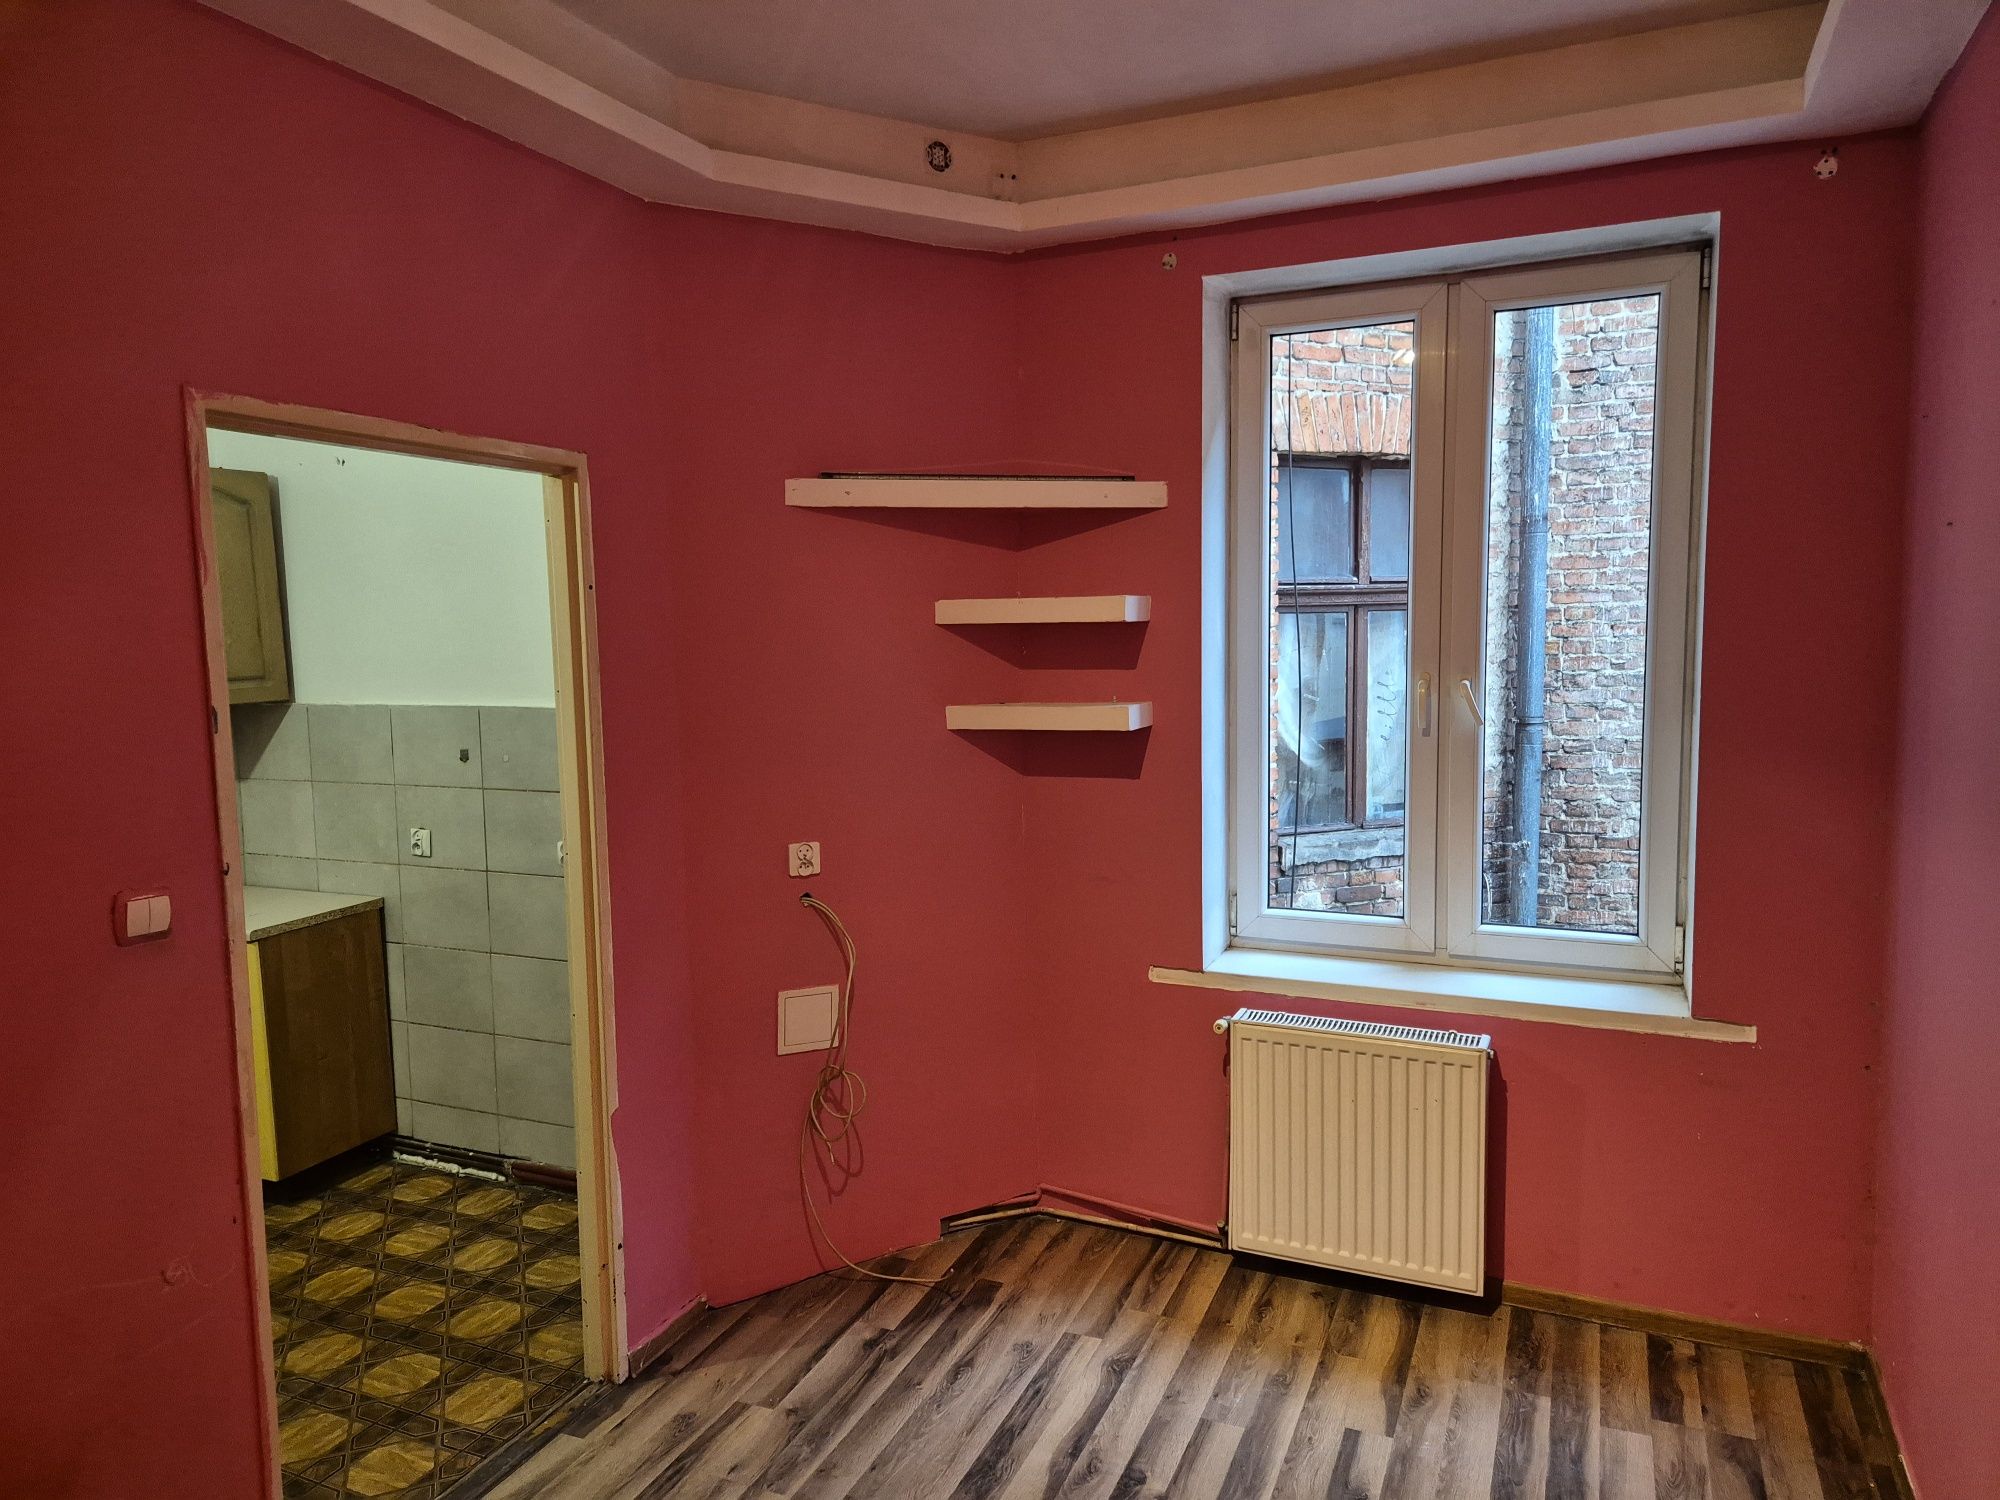 Wynajmę mieszkanie dwupokojowe w centrum Chełmży 46 m2 , 2p.